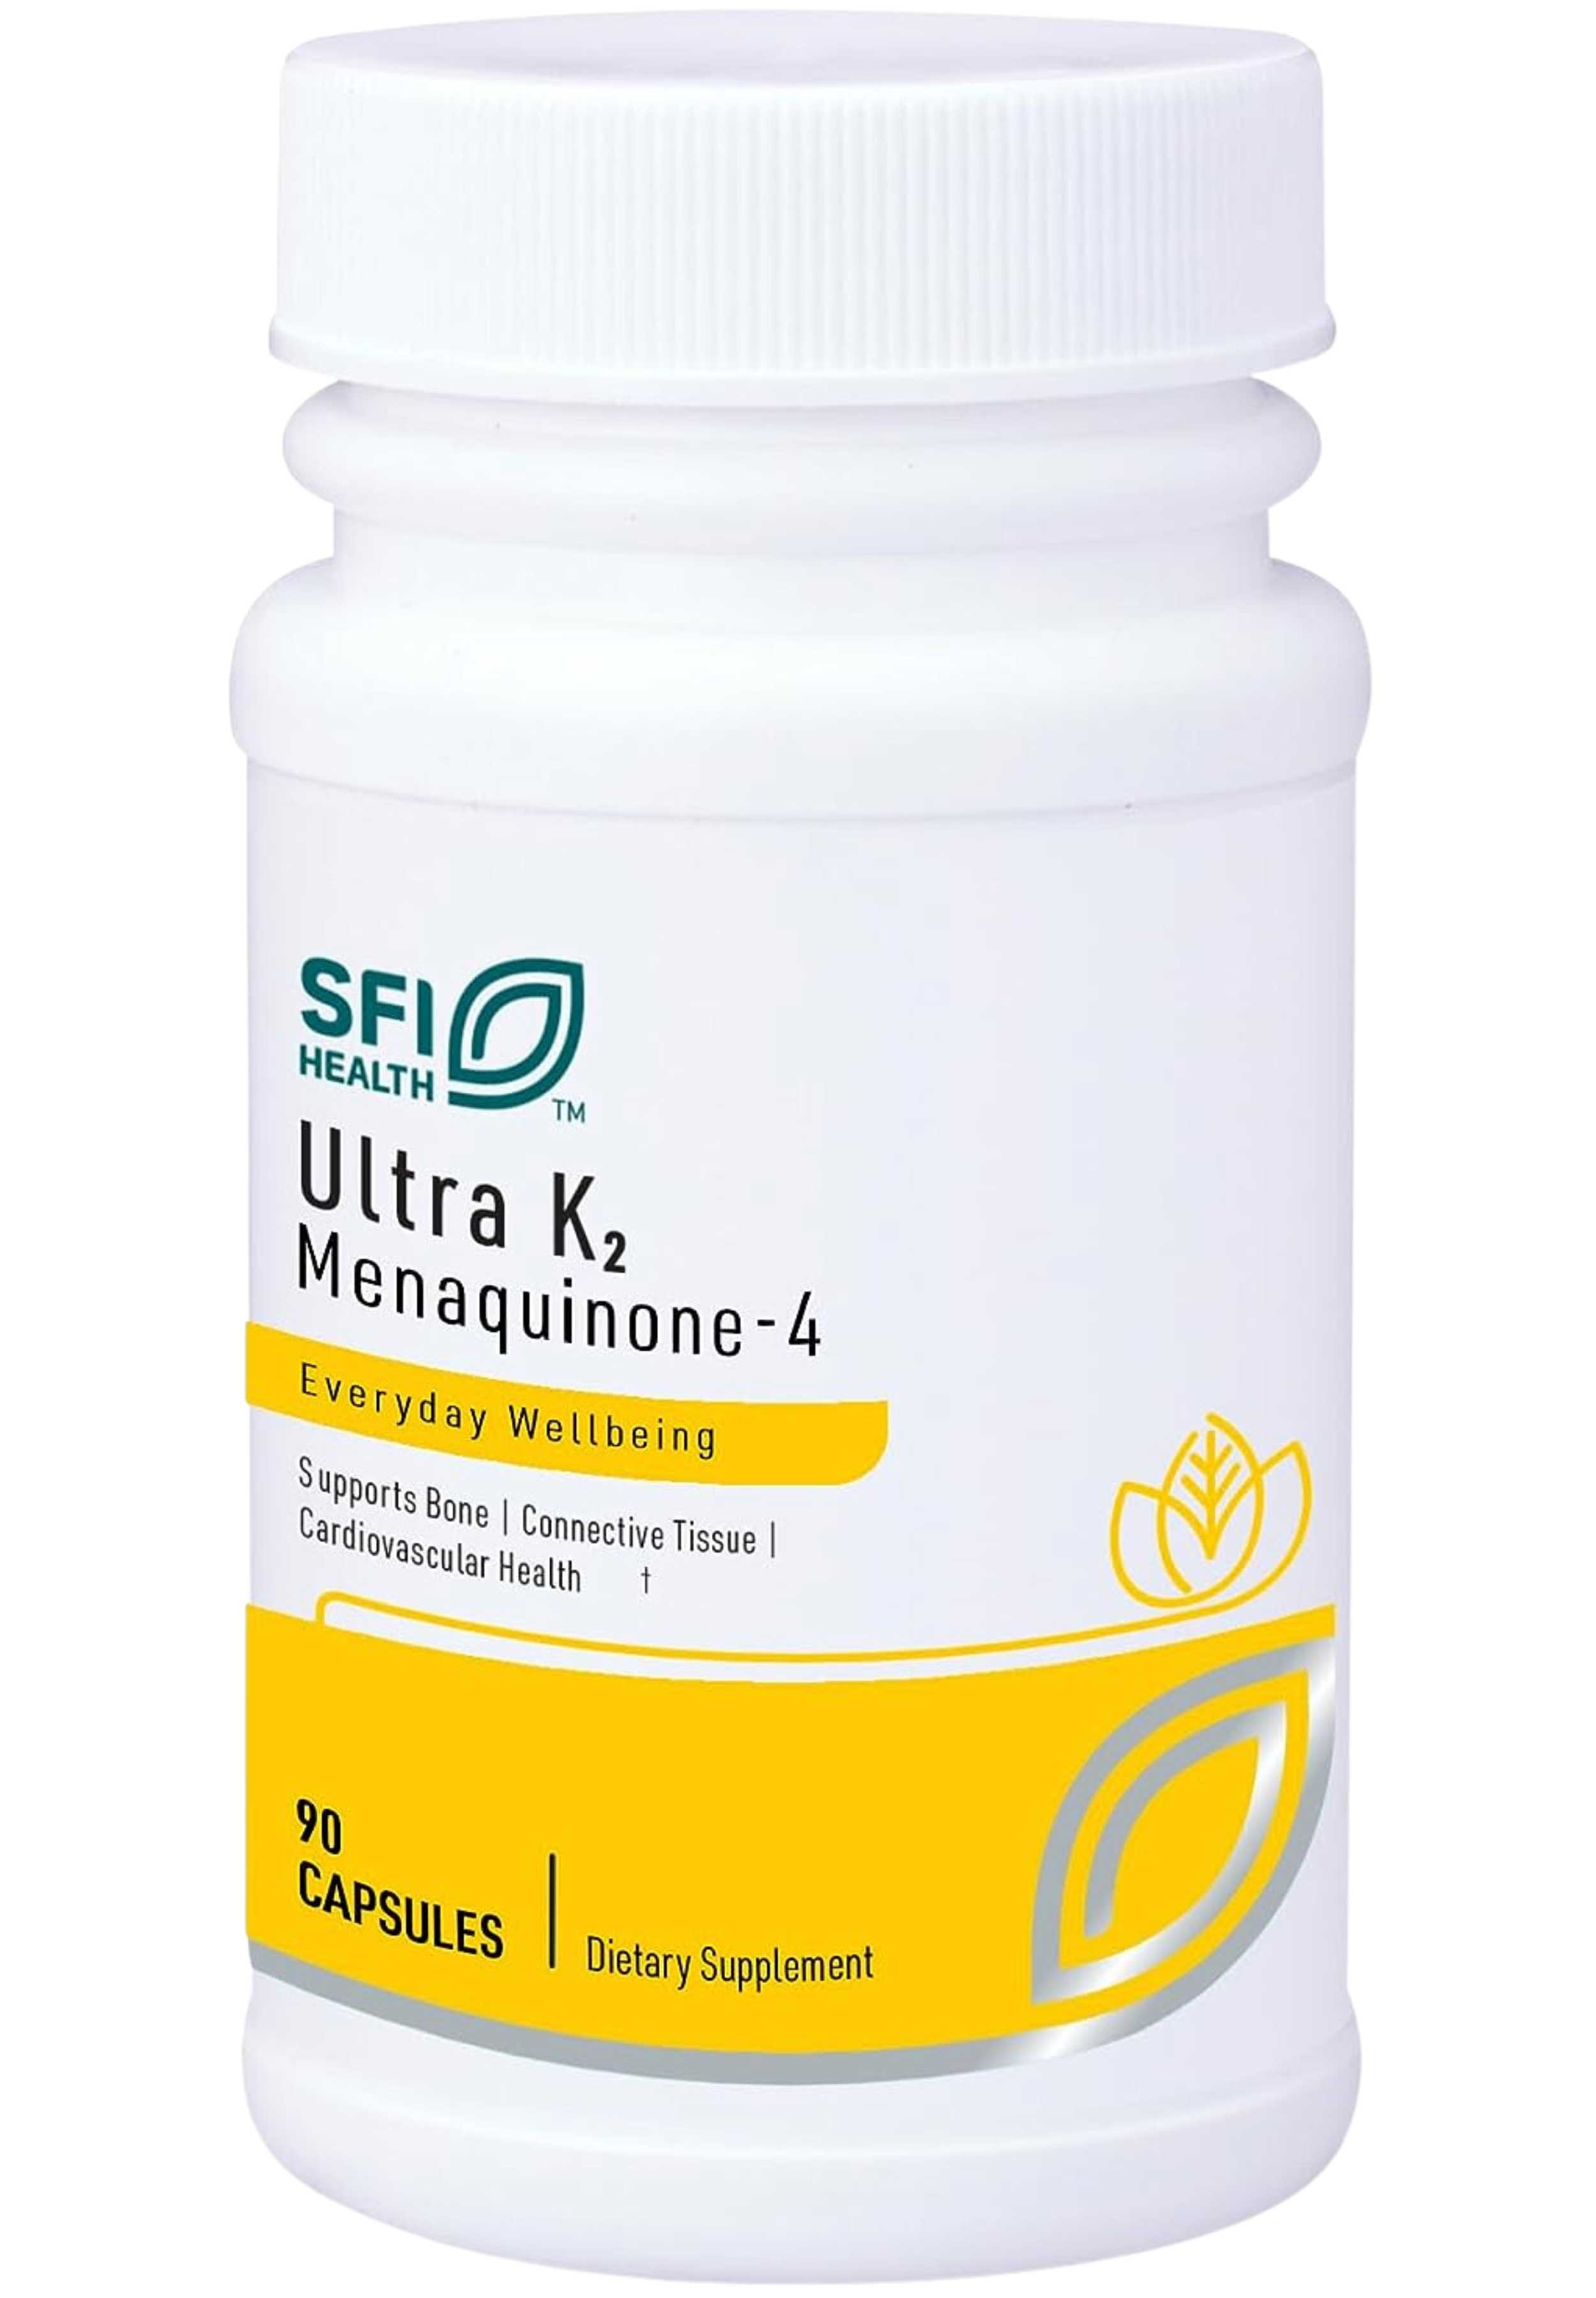 Klaire Labs Ultra K2 Menaquinone - 4